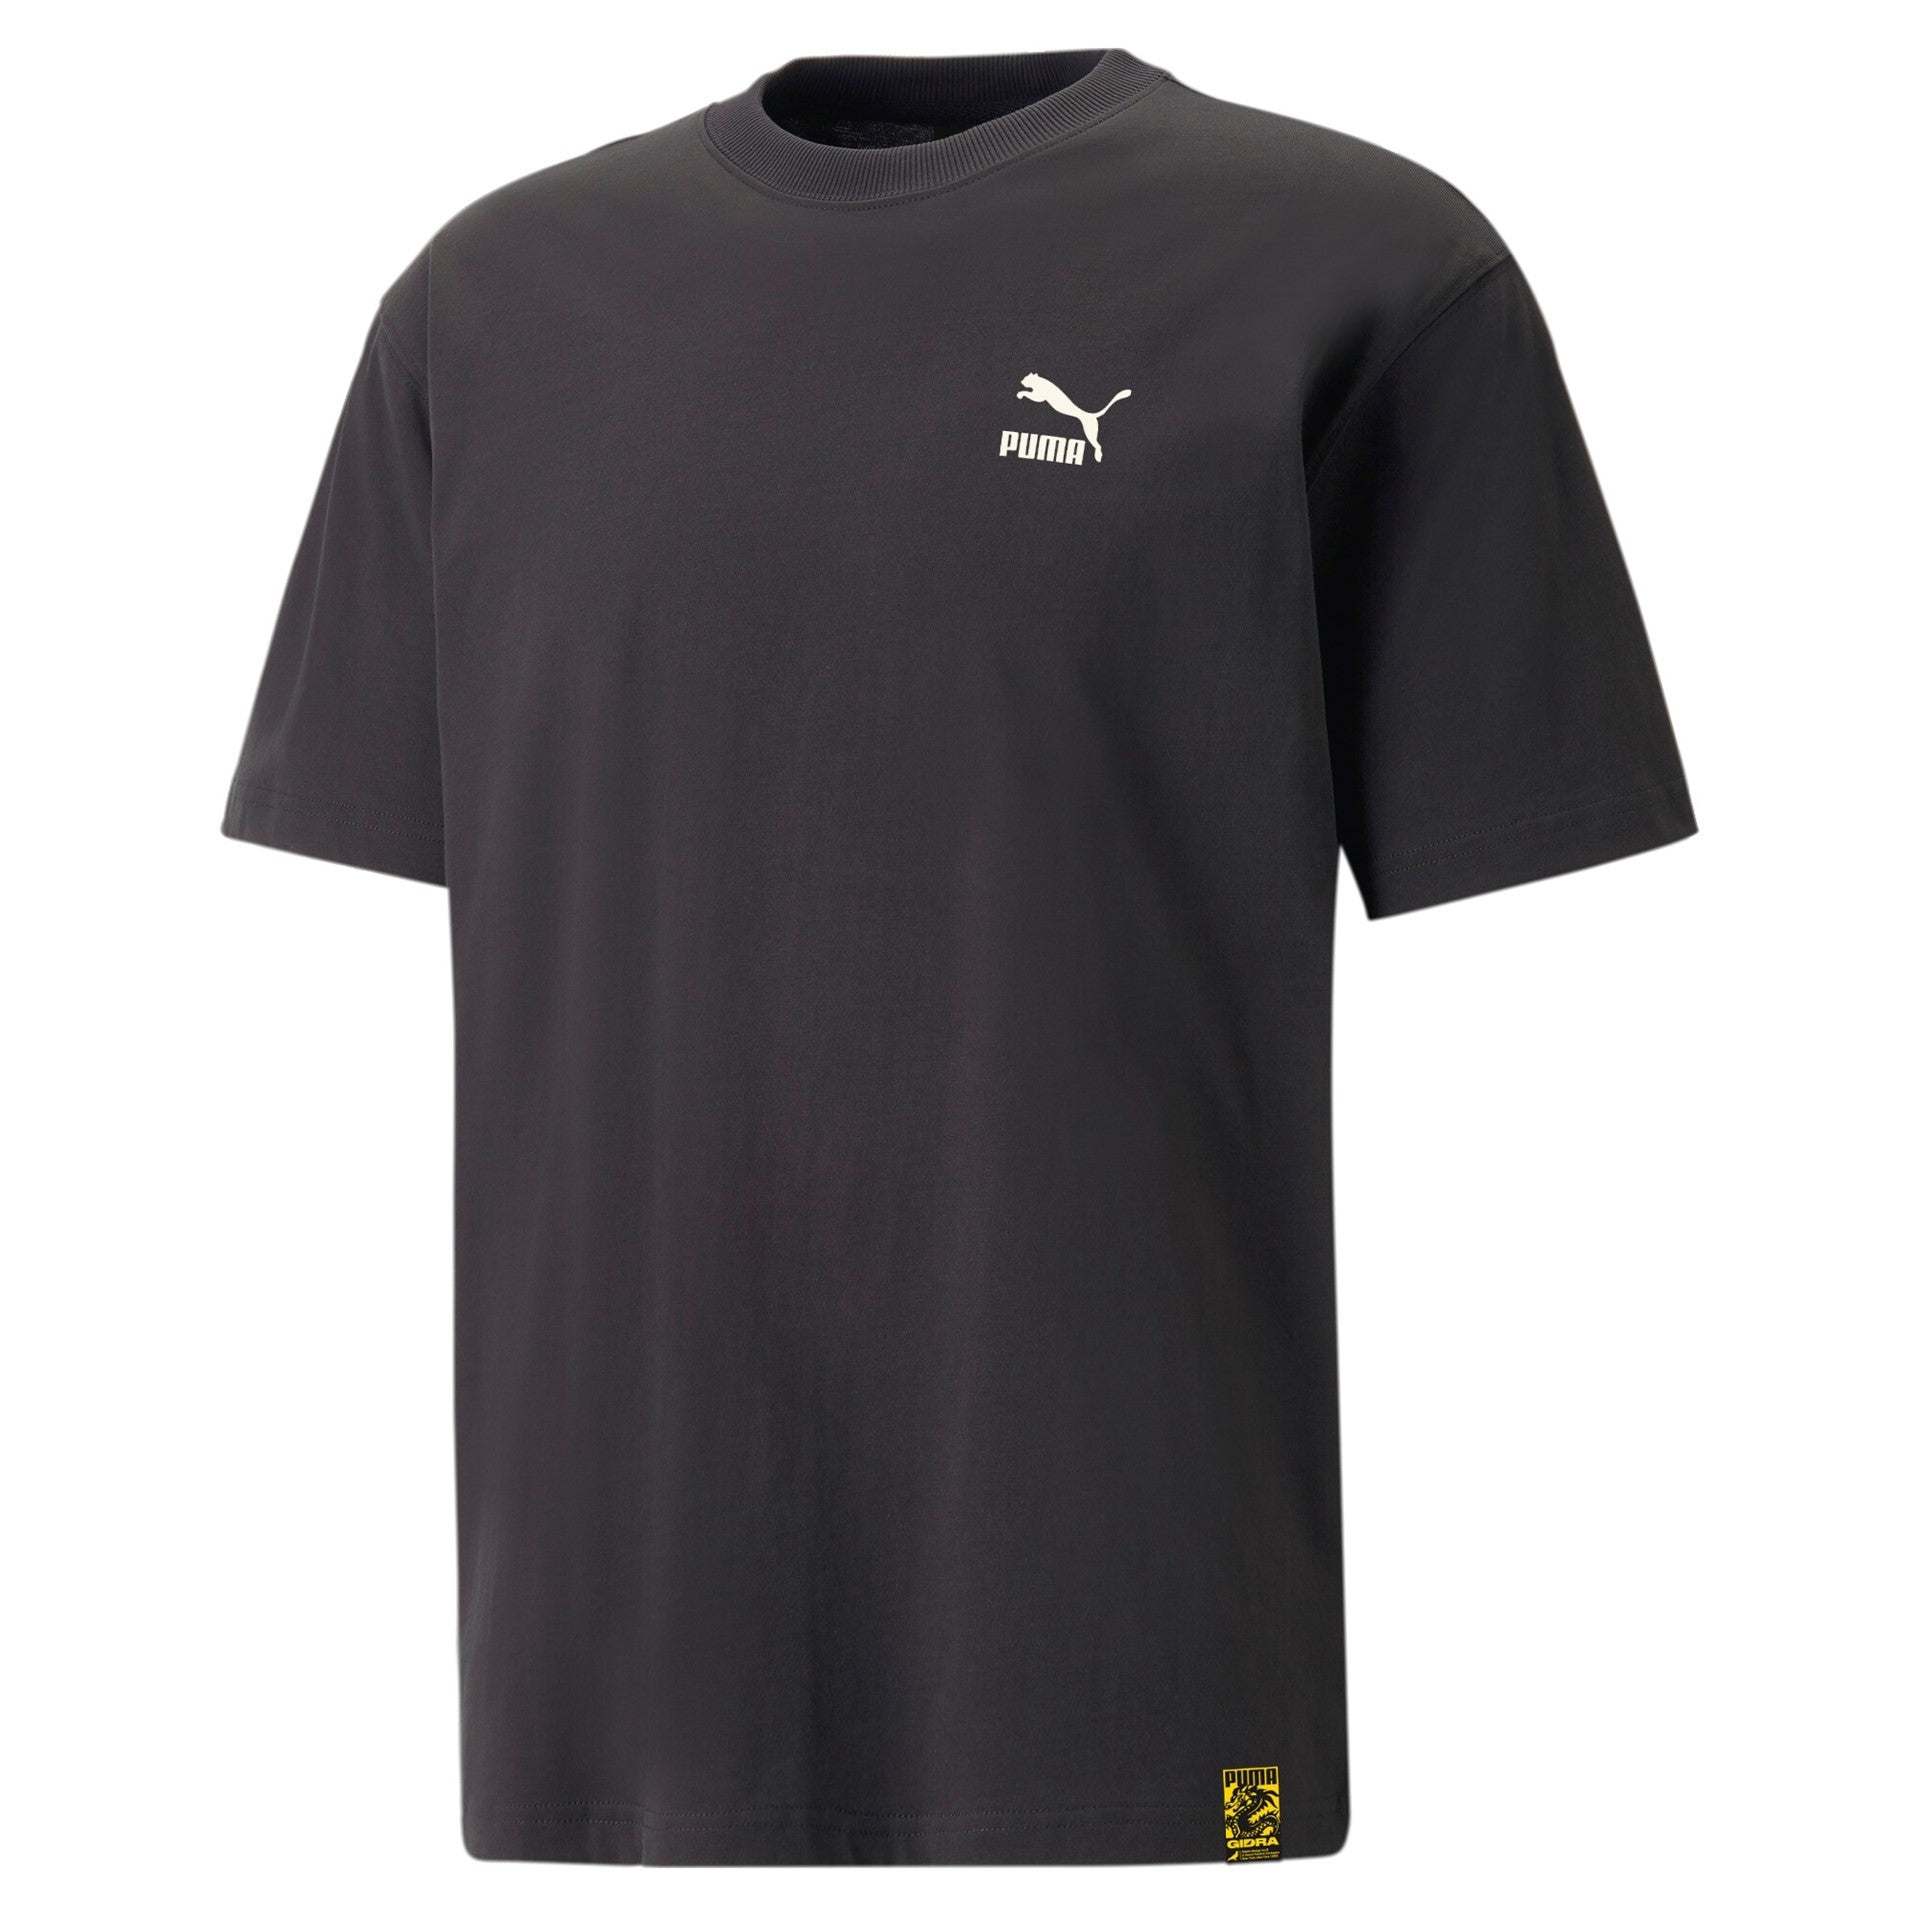 svart t-shirt från puma med bra passform, framifrån